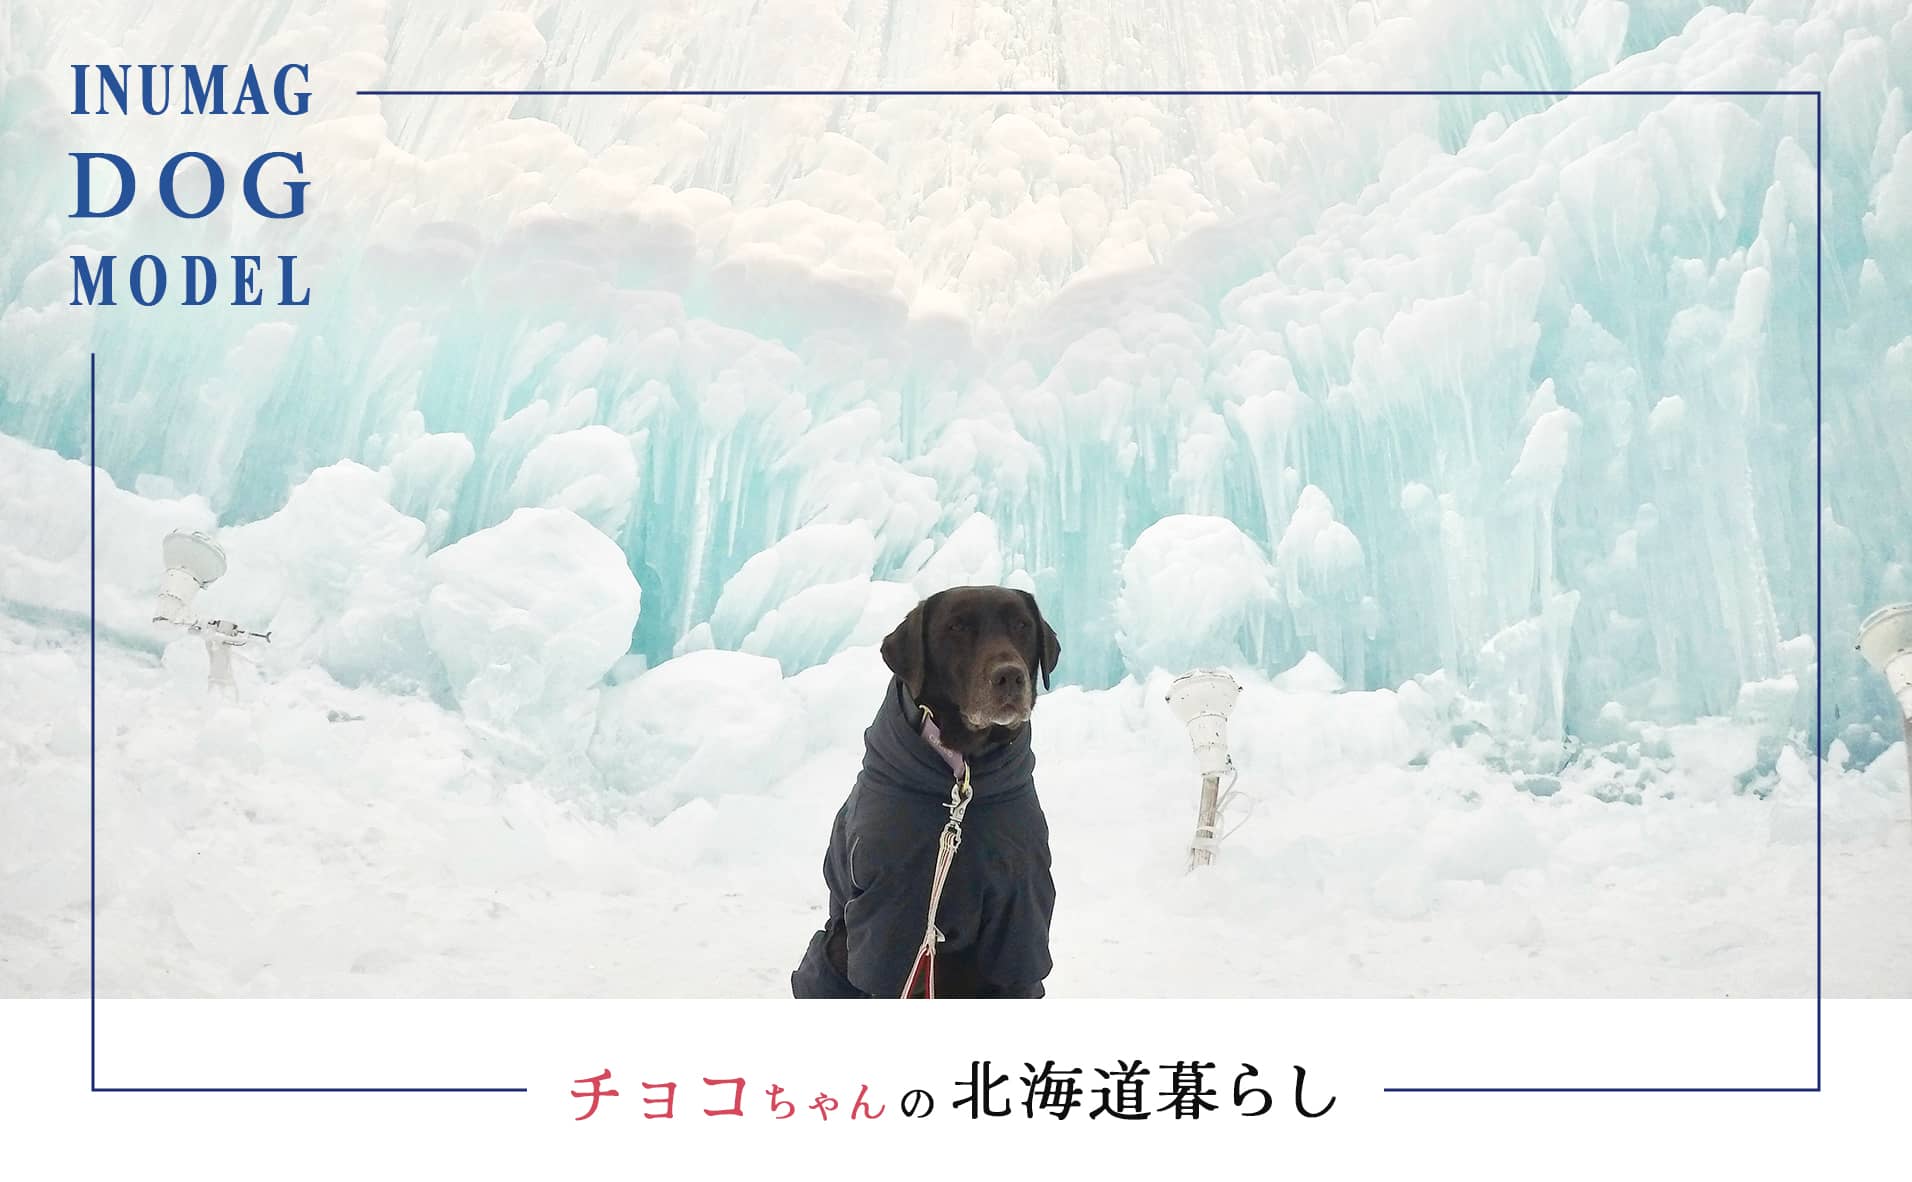 北海道での犬との暮らし ”INUMAGモデル犬チョコちゃん”の実体験コラム新連載スタート！